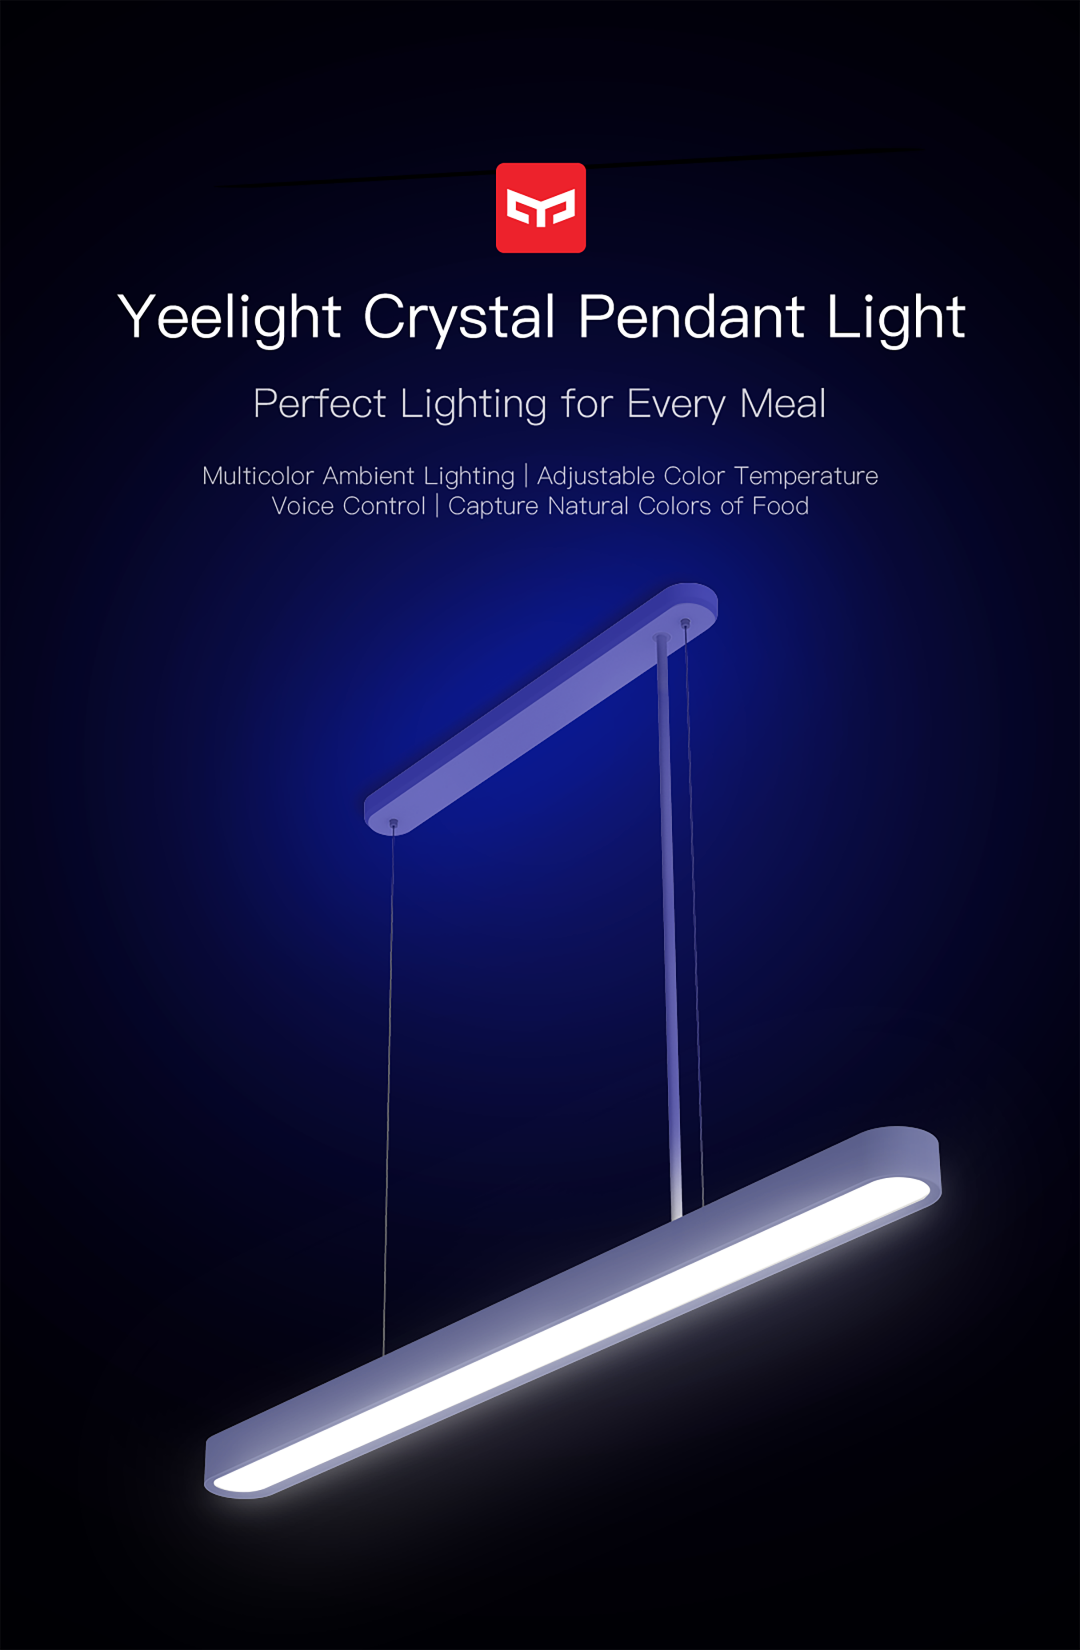 Crystal Pendant Light-Yeelight Crystal Pendant Light-Yeelight